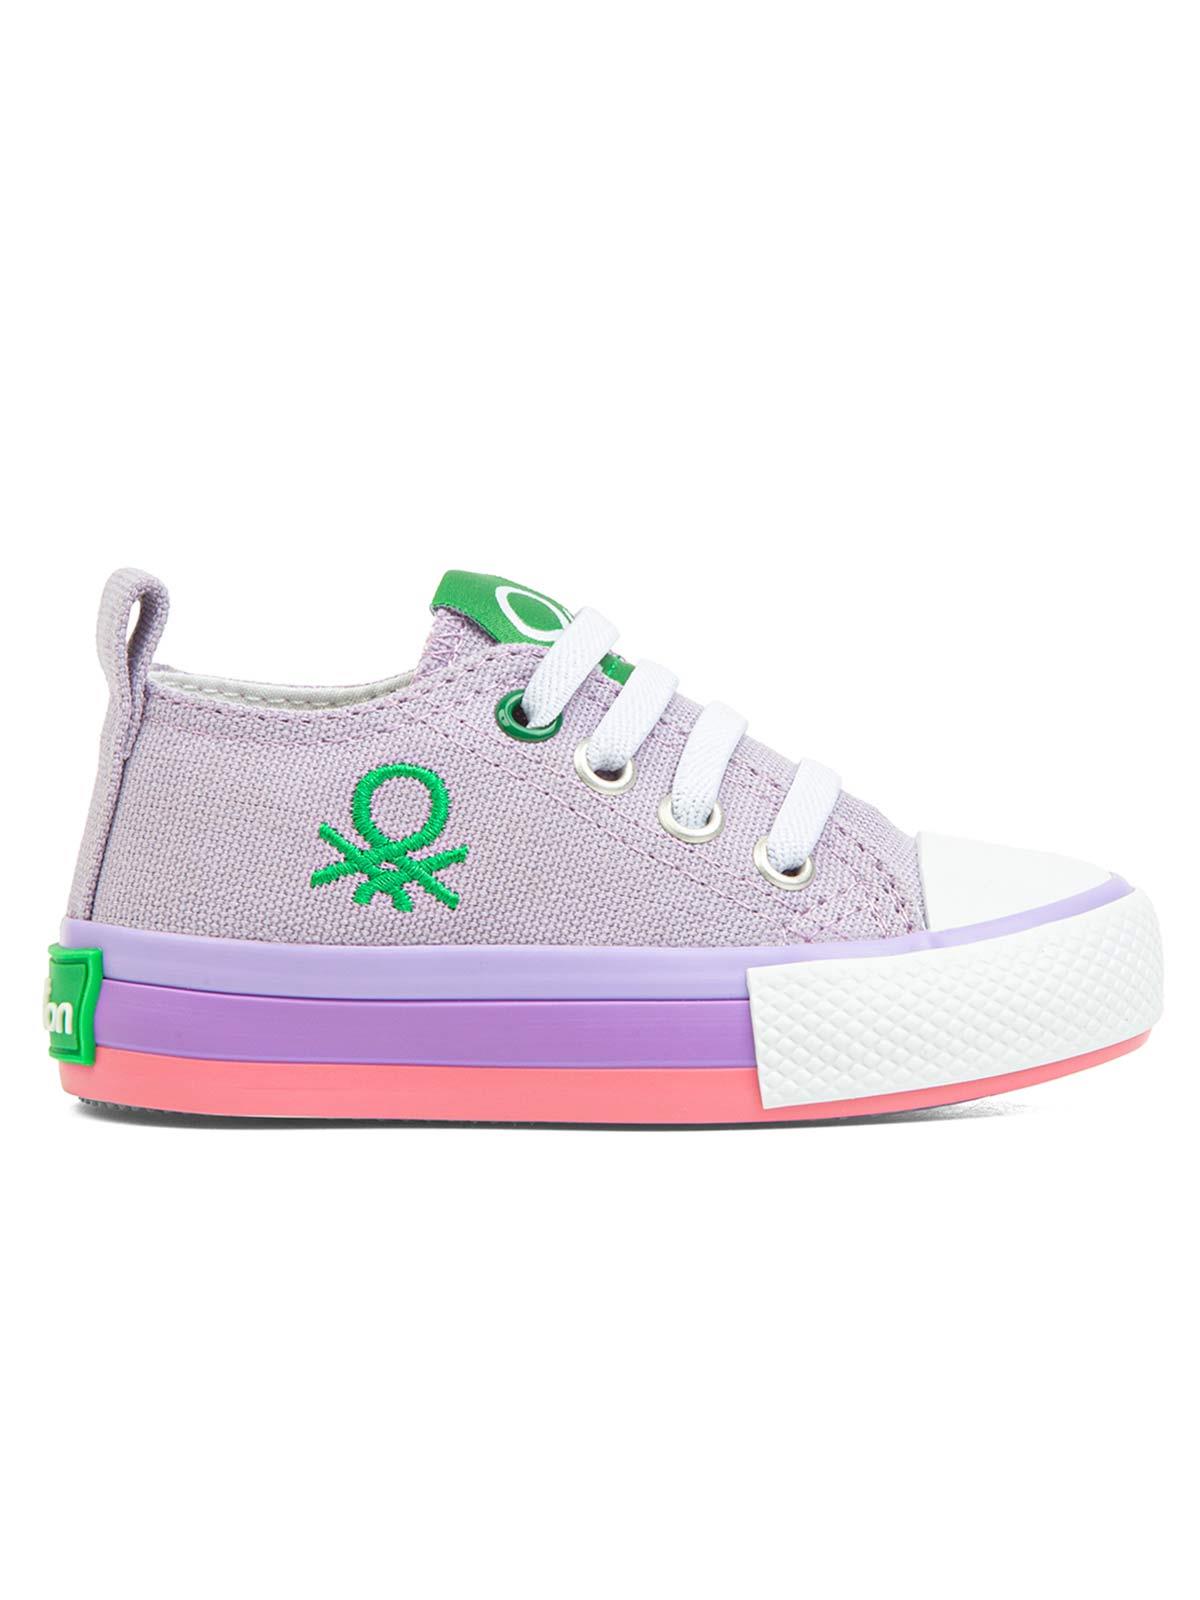 Benetton Kız Çocuk Spor Ayakkabı 21-25 Numara Lila